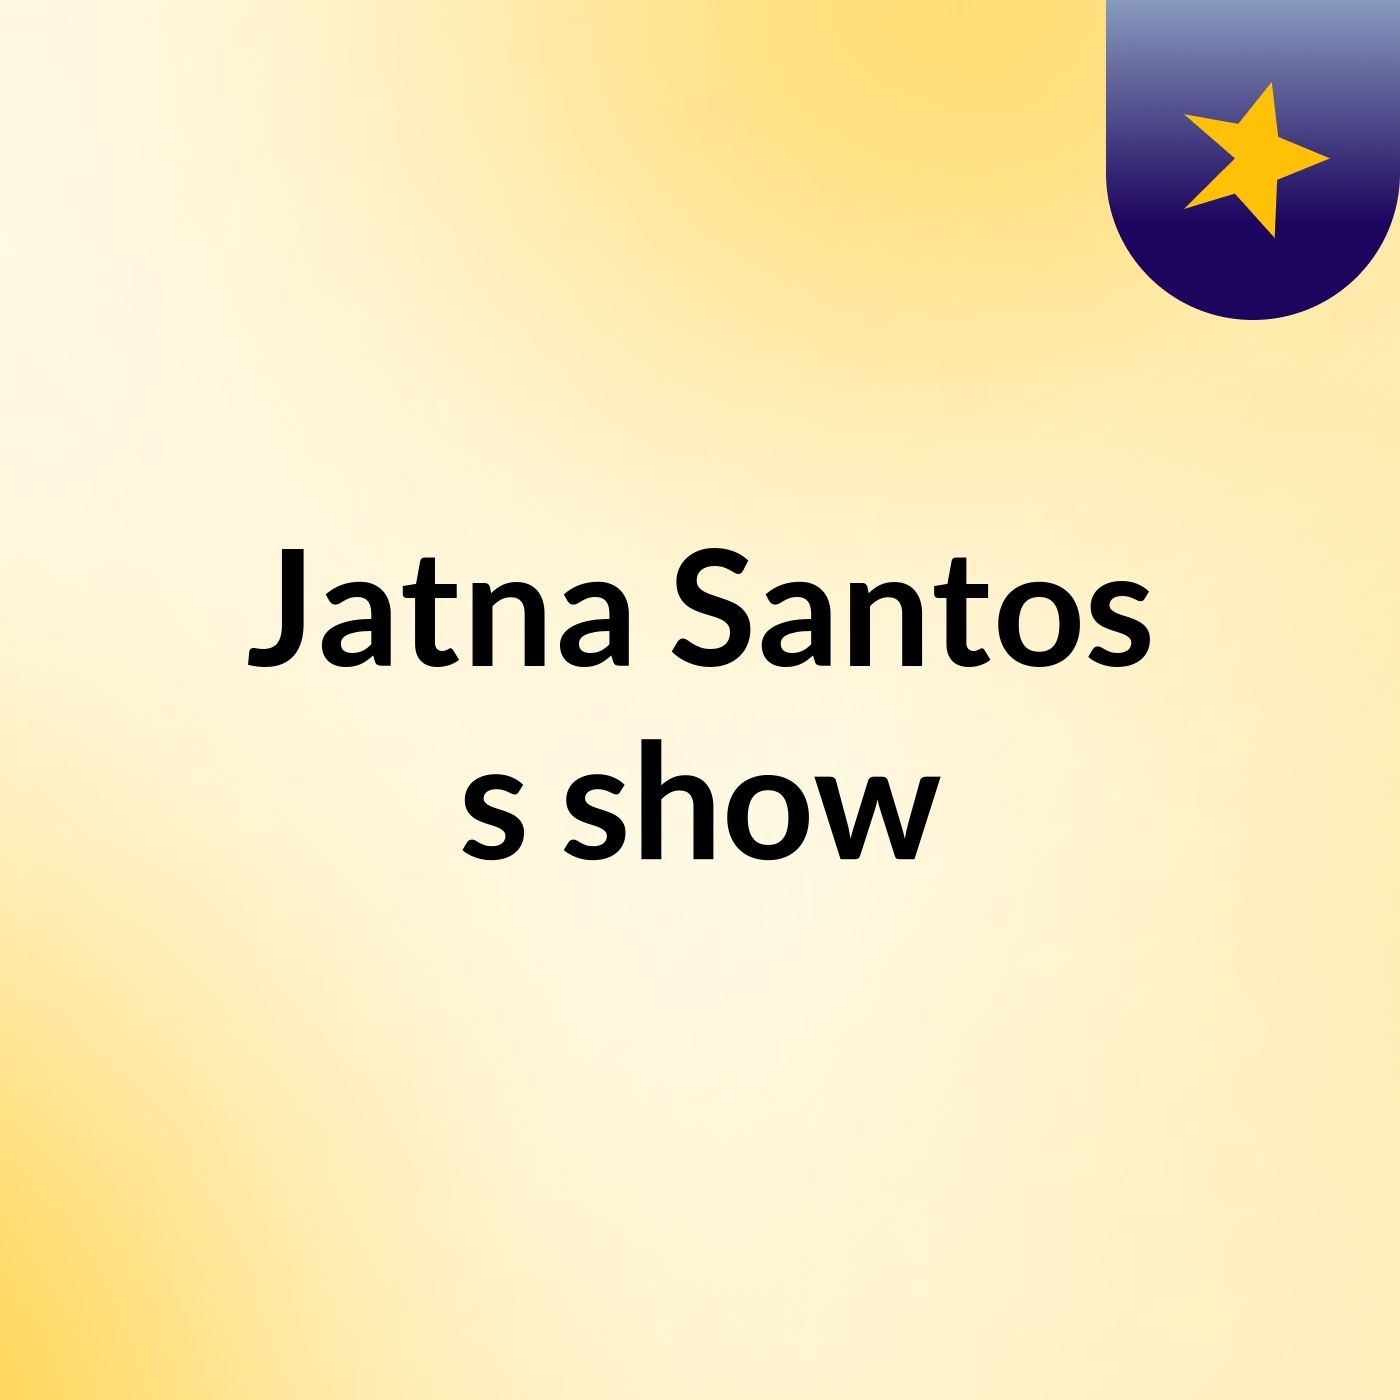 Jatna Santos's show